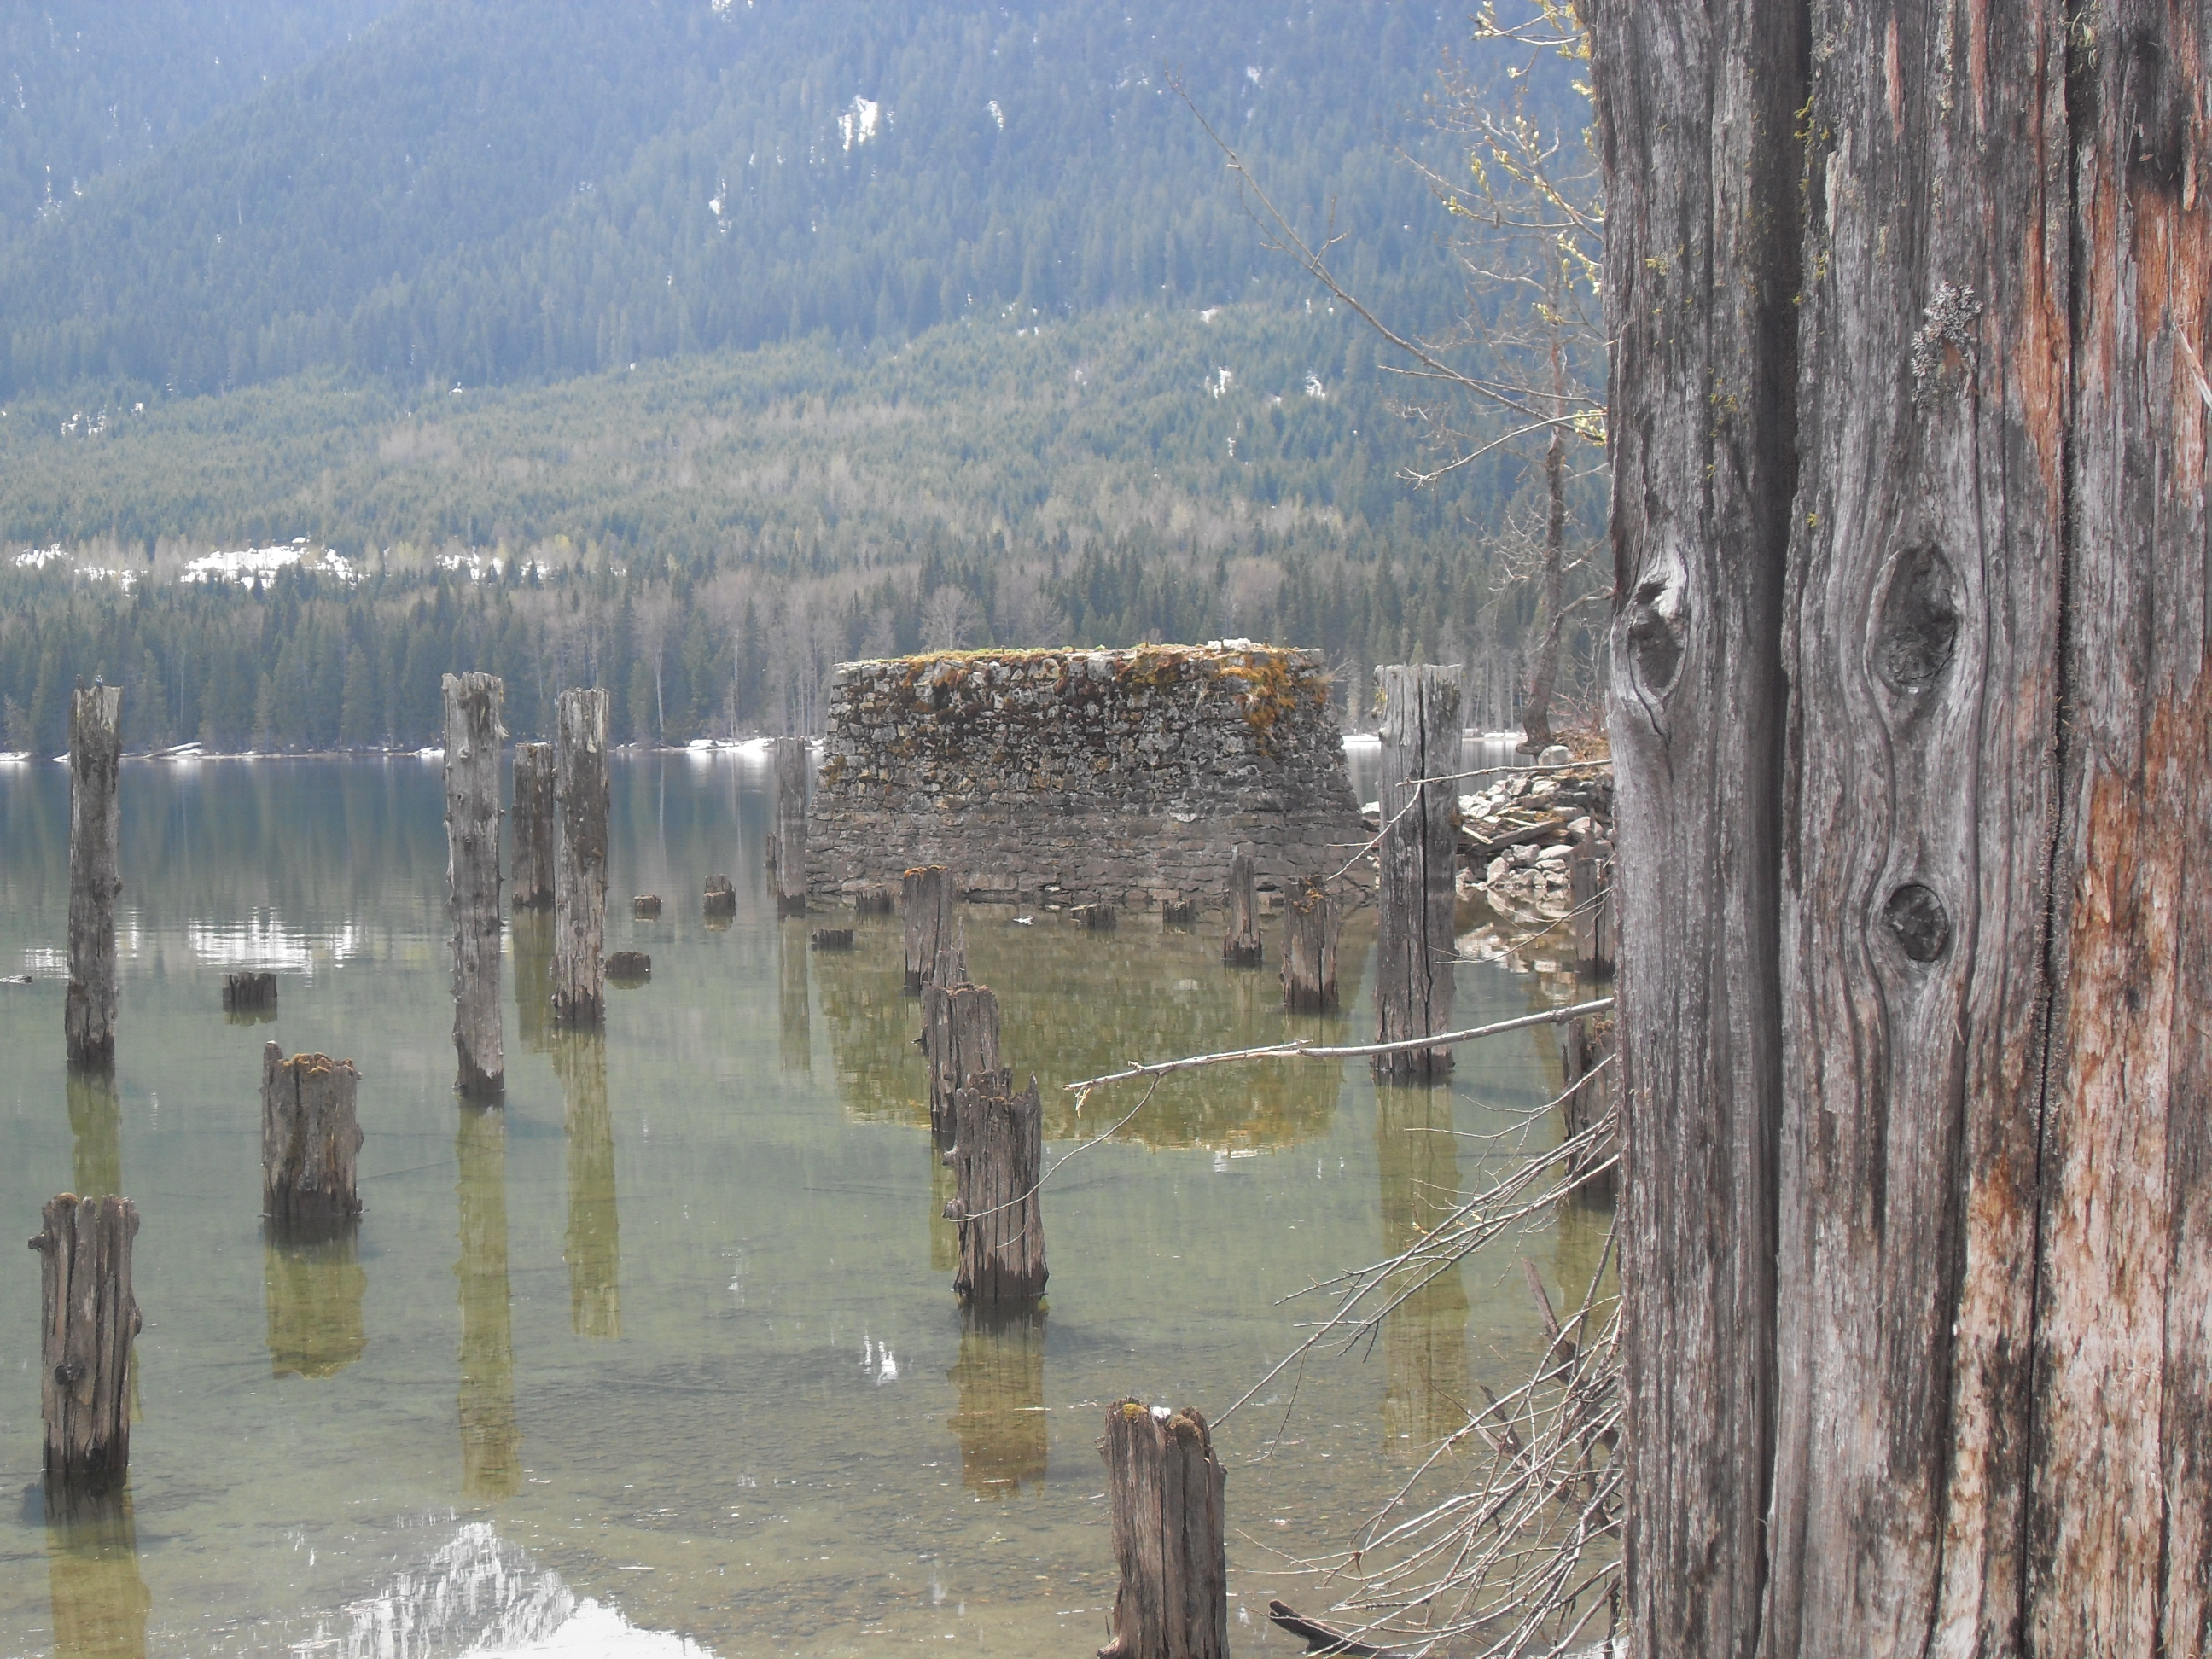 Ore docks Trout Lake BC